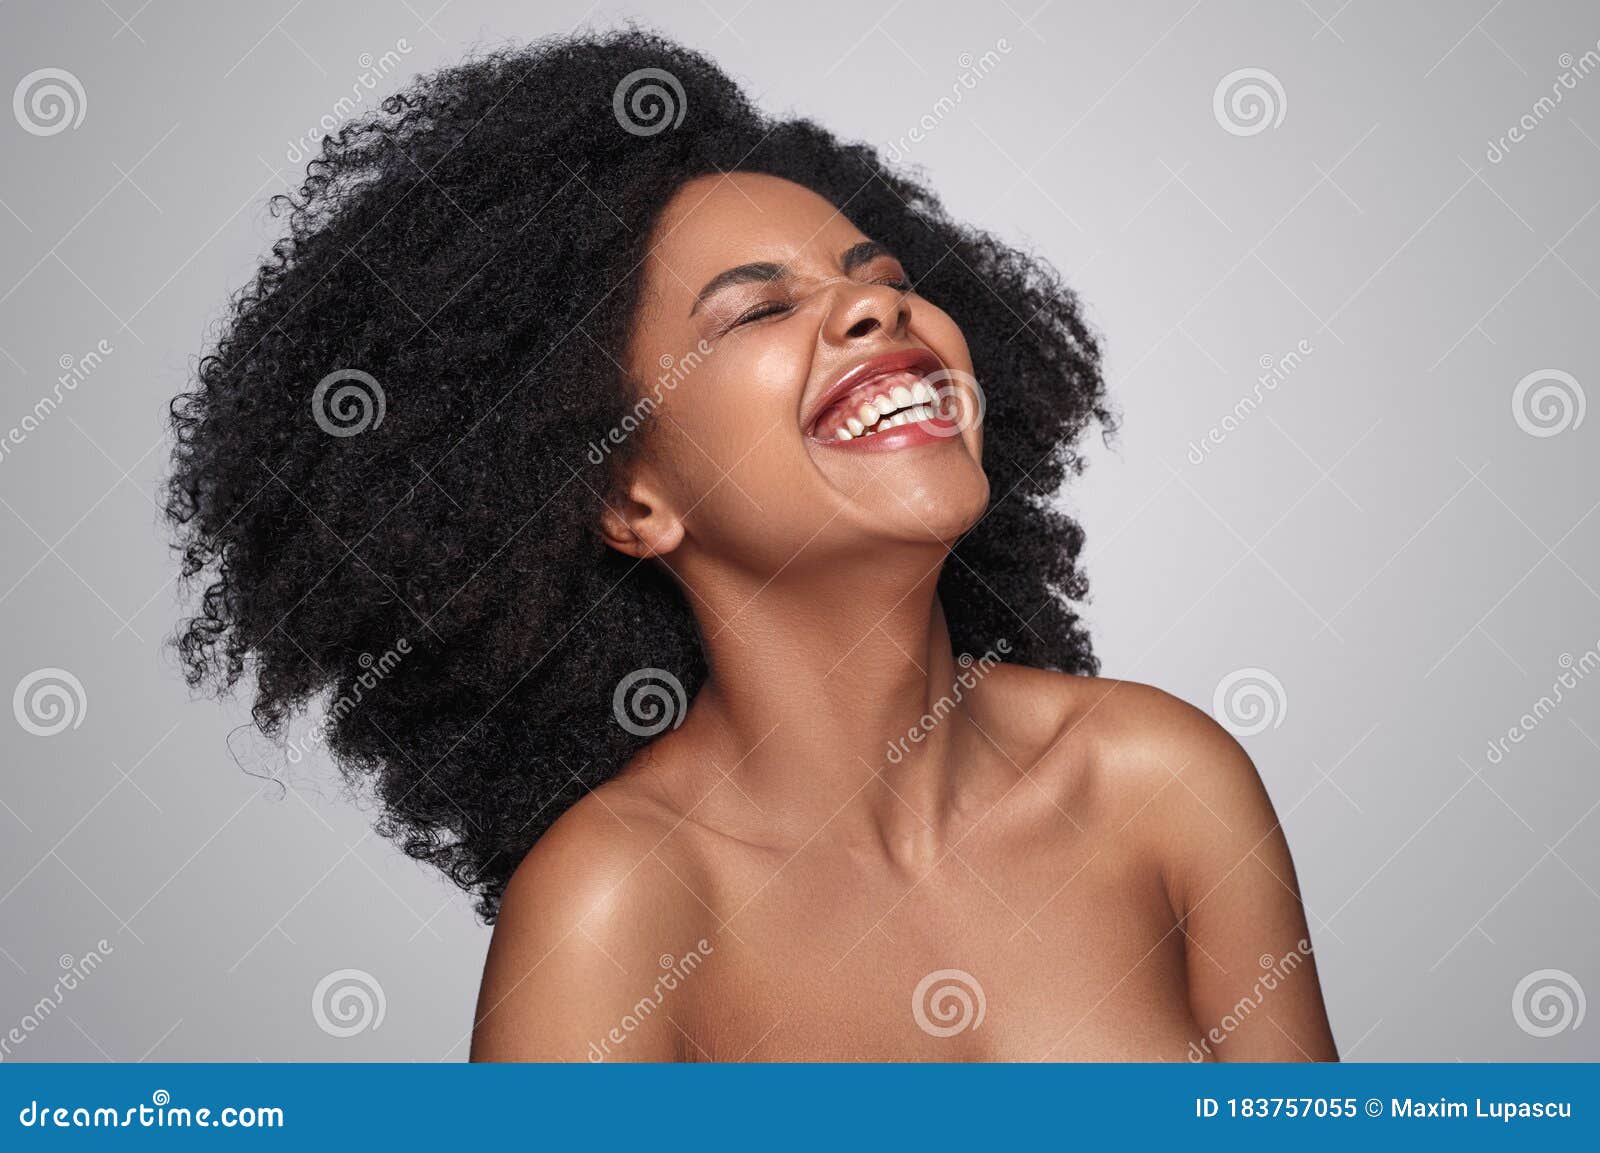 黑人头发的非洲裔美国女孩的美丽肖像。漂亮的黑人妇女。化妆品、化妆品和时装库存照片1792932268 | Shutterstock